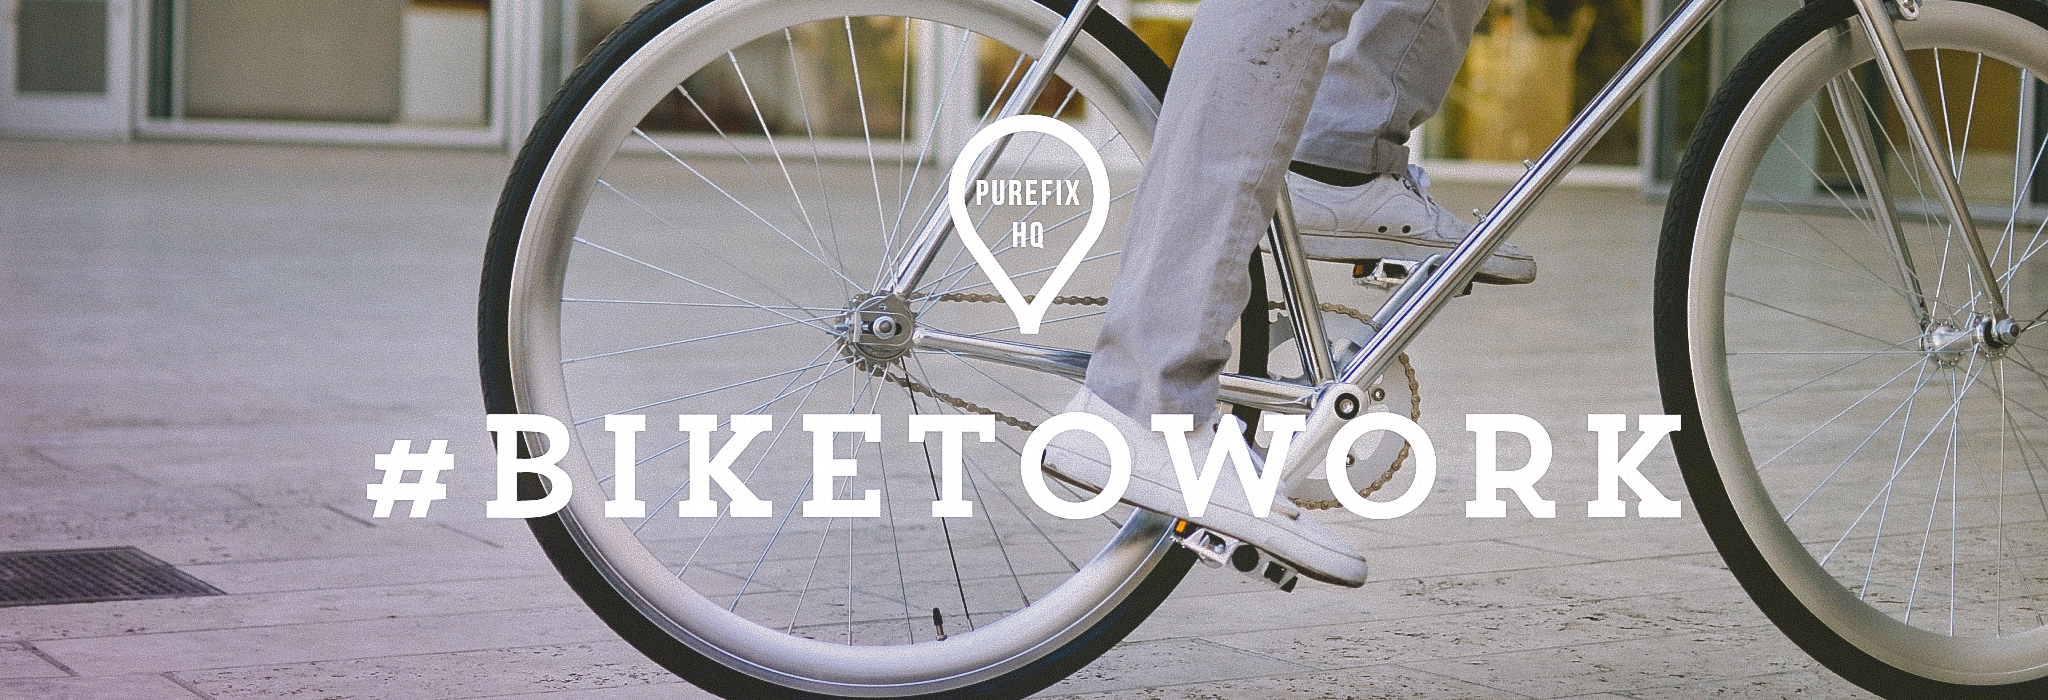 biketowork-banner